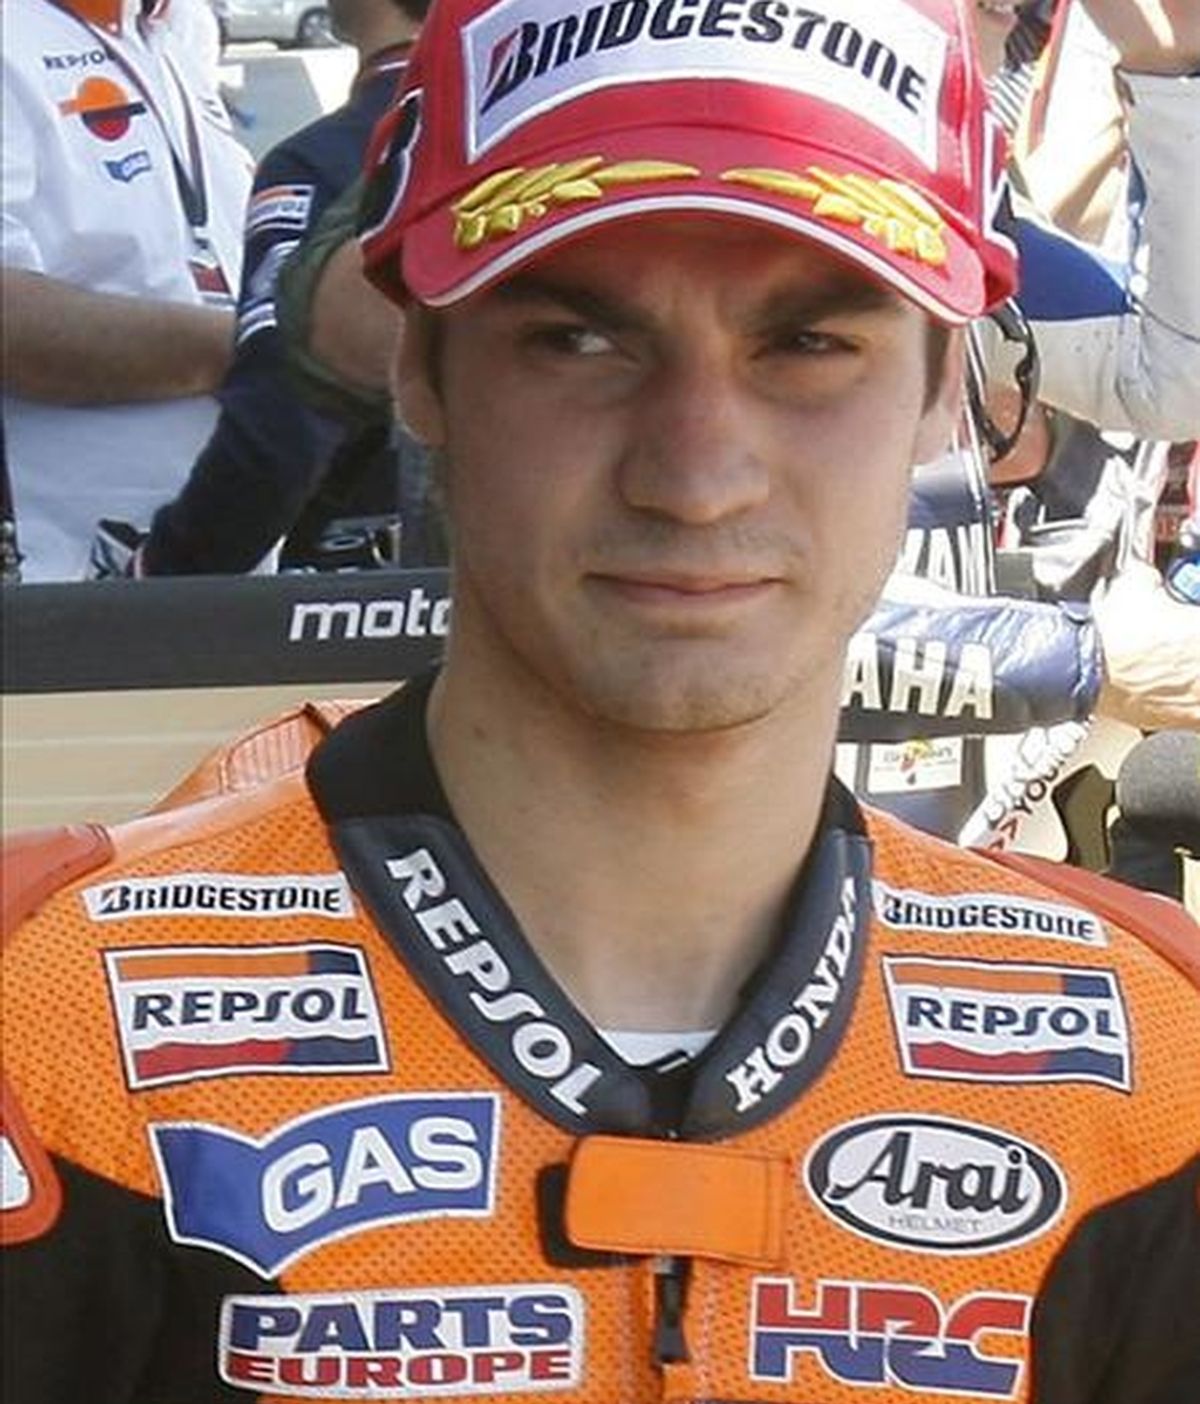 El piloto español de moto GP Dani Pedrosa. EFE/Archivo